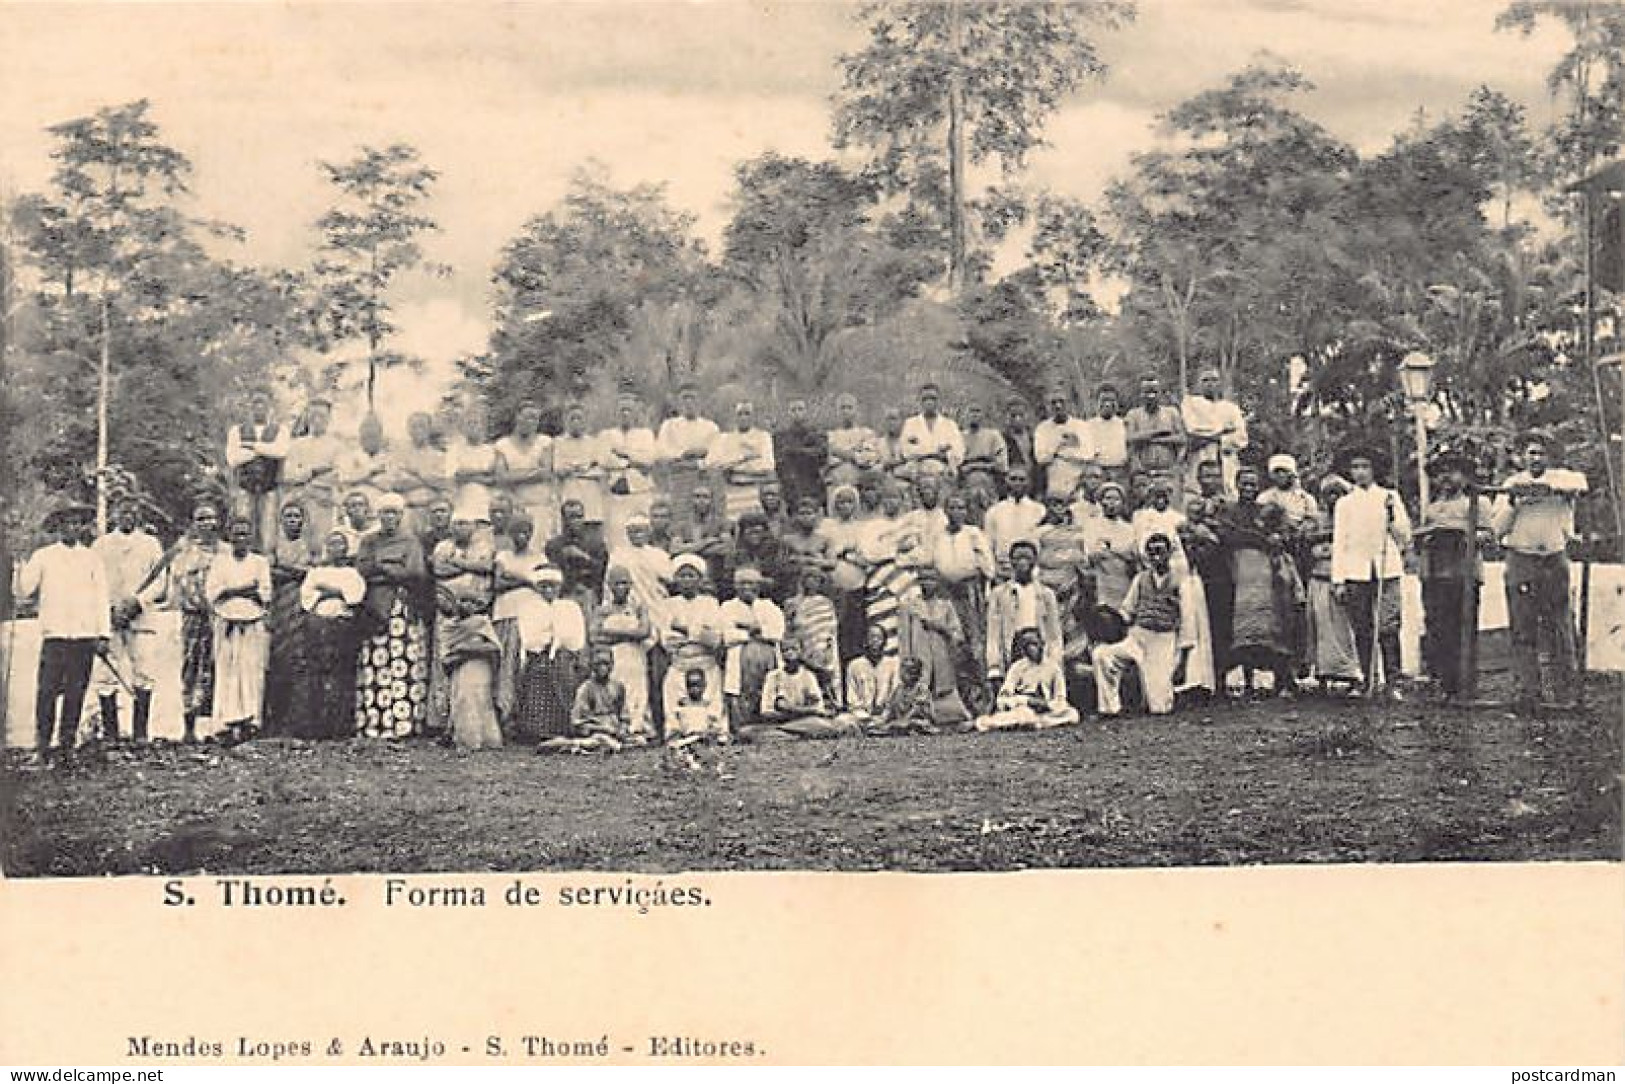 SAO TOME - Servants - Publ. Mendes. - Sao Tome And Principe